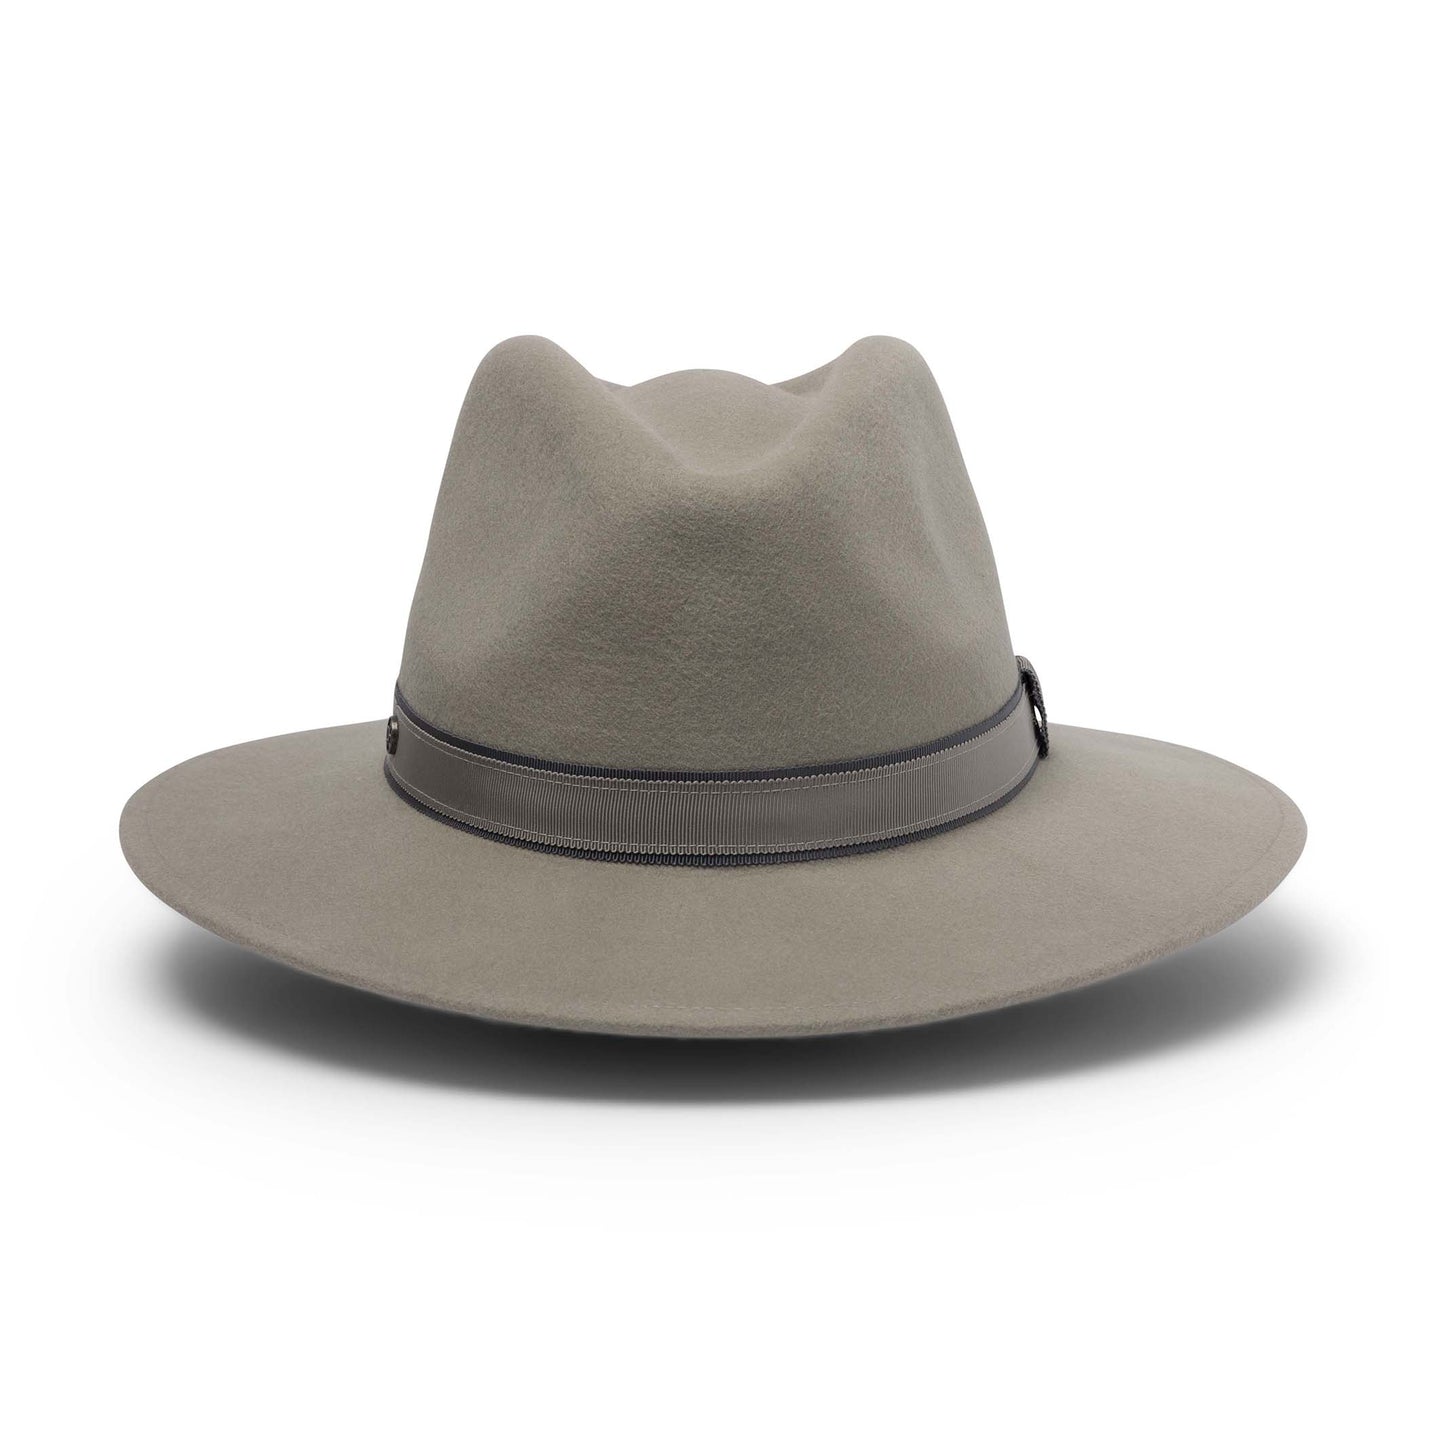 Canopy Bay Croydon Felt Fedora Hat